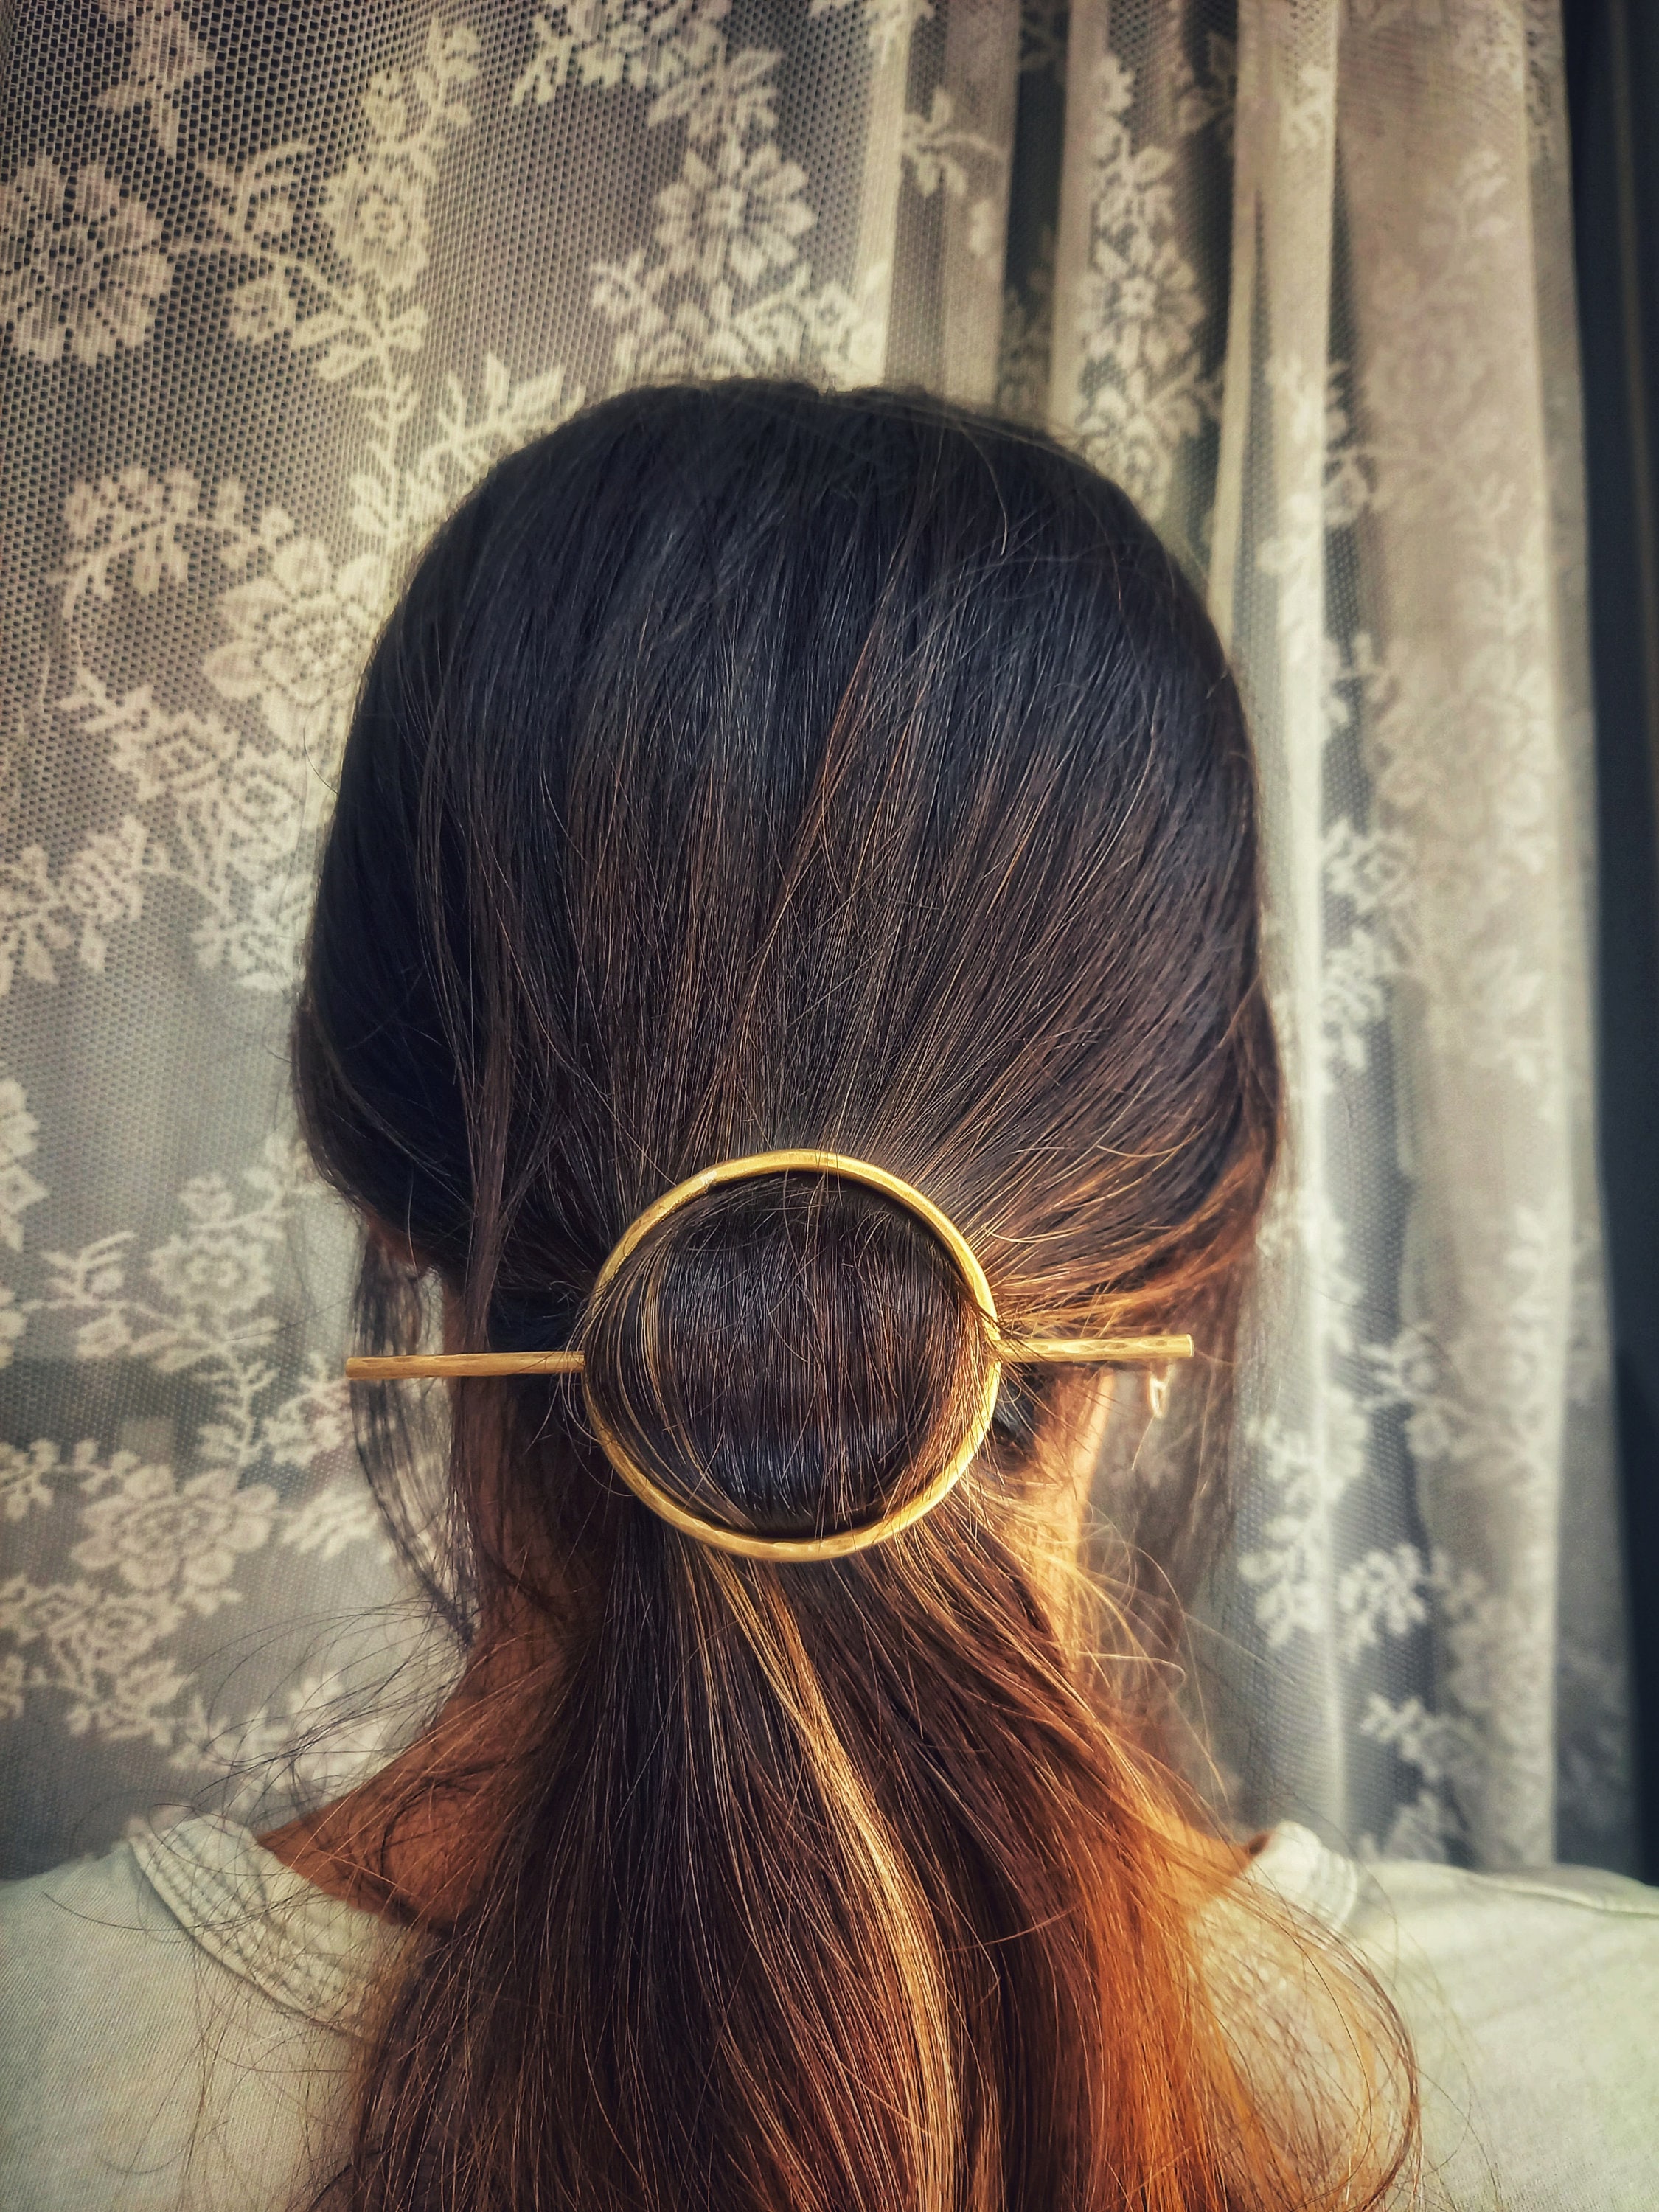 Celtic Hair Clip Barrette With Stick Unique Medieval 